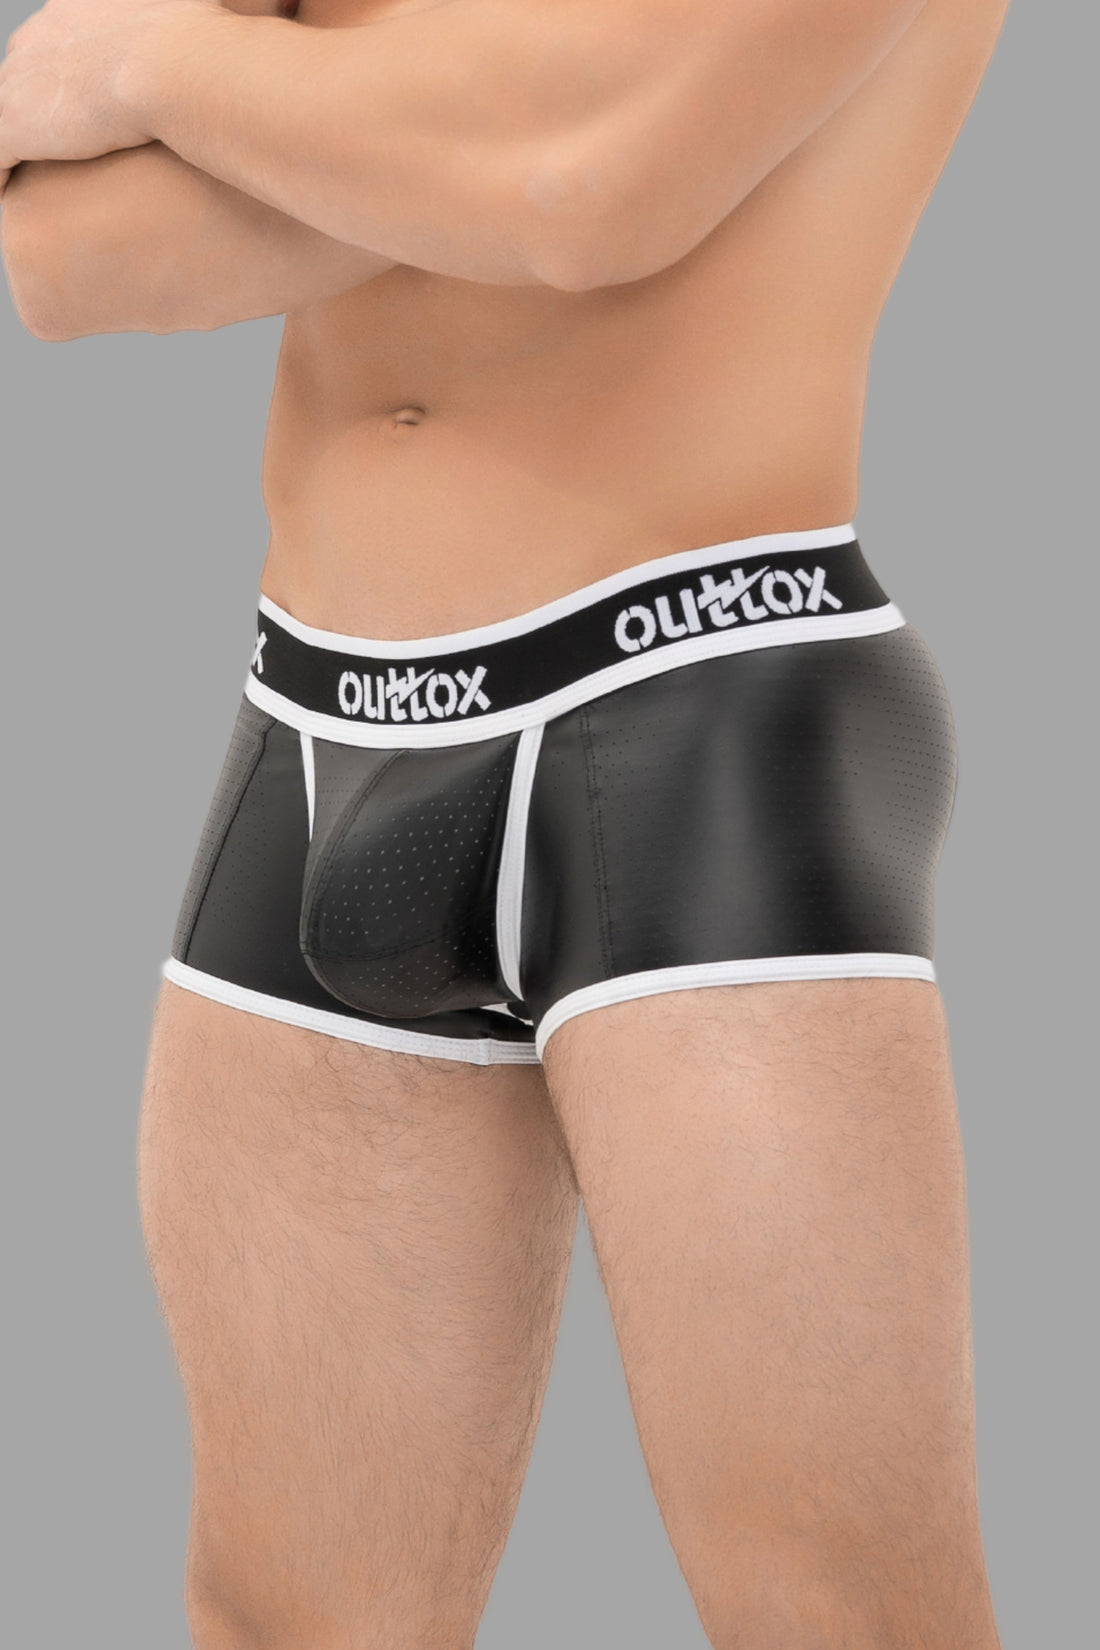 Outtox. Pantalones cortos con parte trasera abierta y bragueta a presión. Negro+Blanco